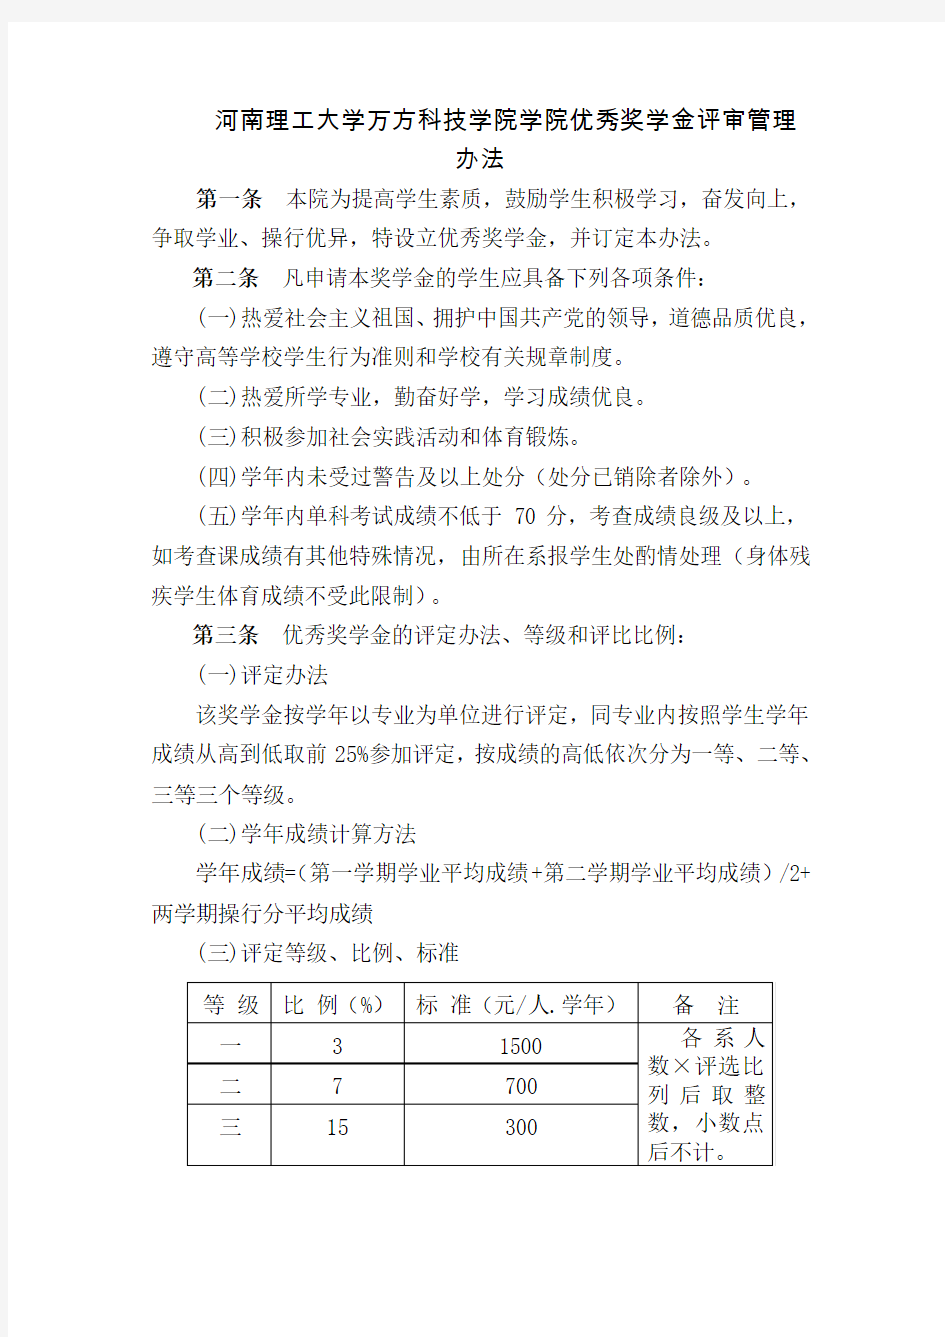 河南理工大学万方科技学院优秀奖学金评定办法11.10.5